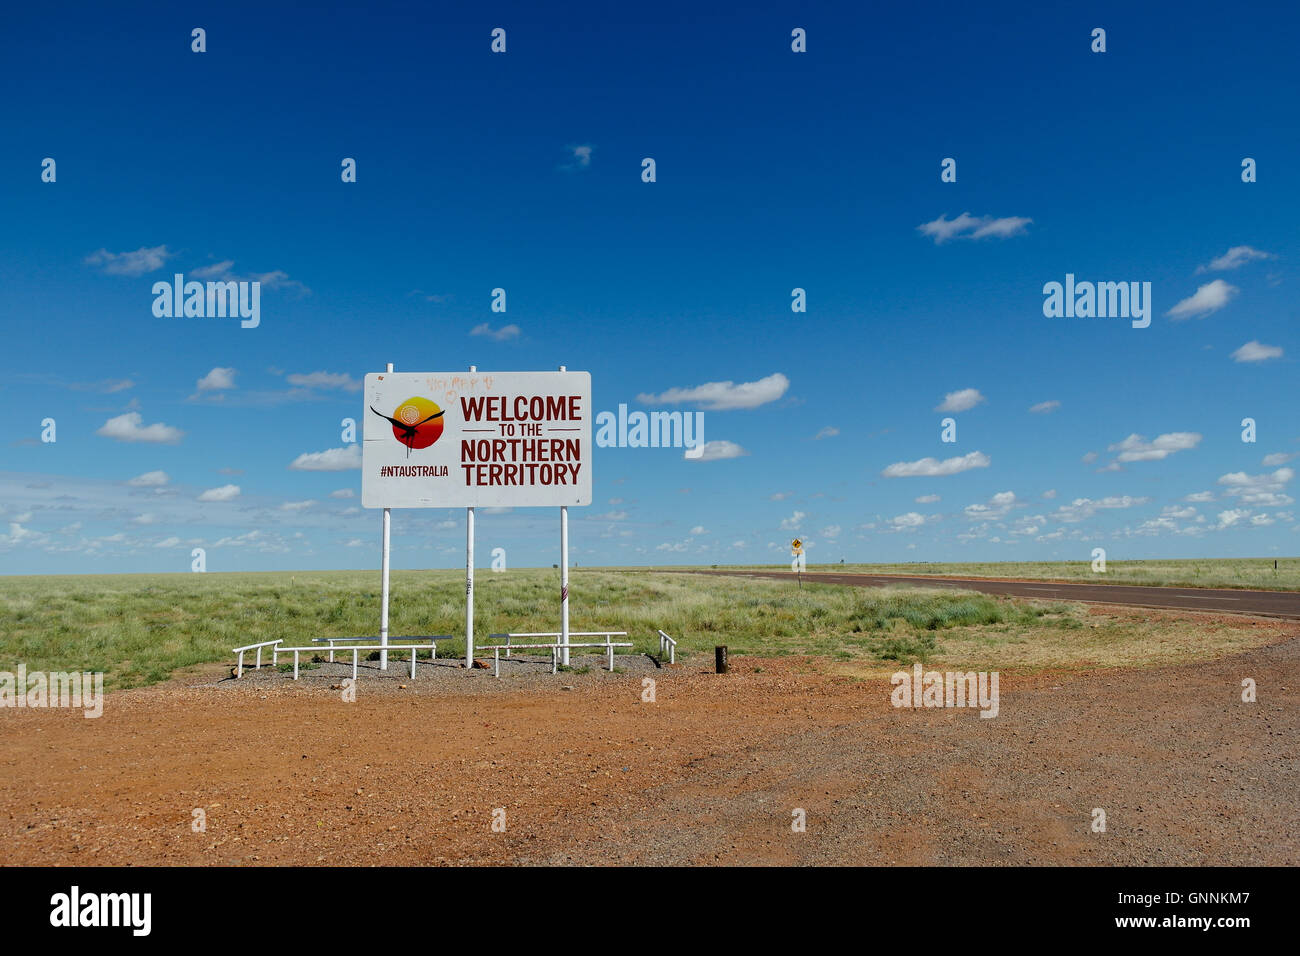 Willkommen Sie im Northern Territory Straßenschild in Zentral-Australien - Australien Stockfoto